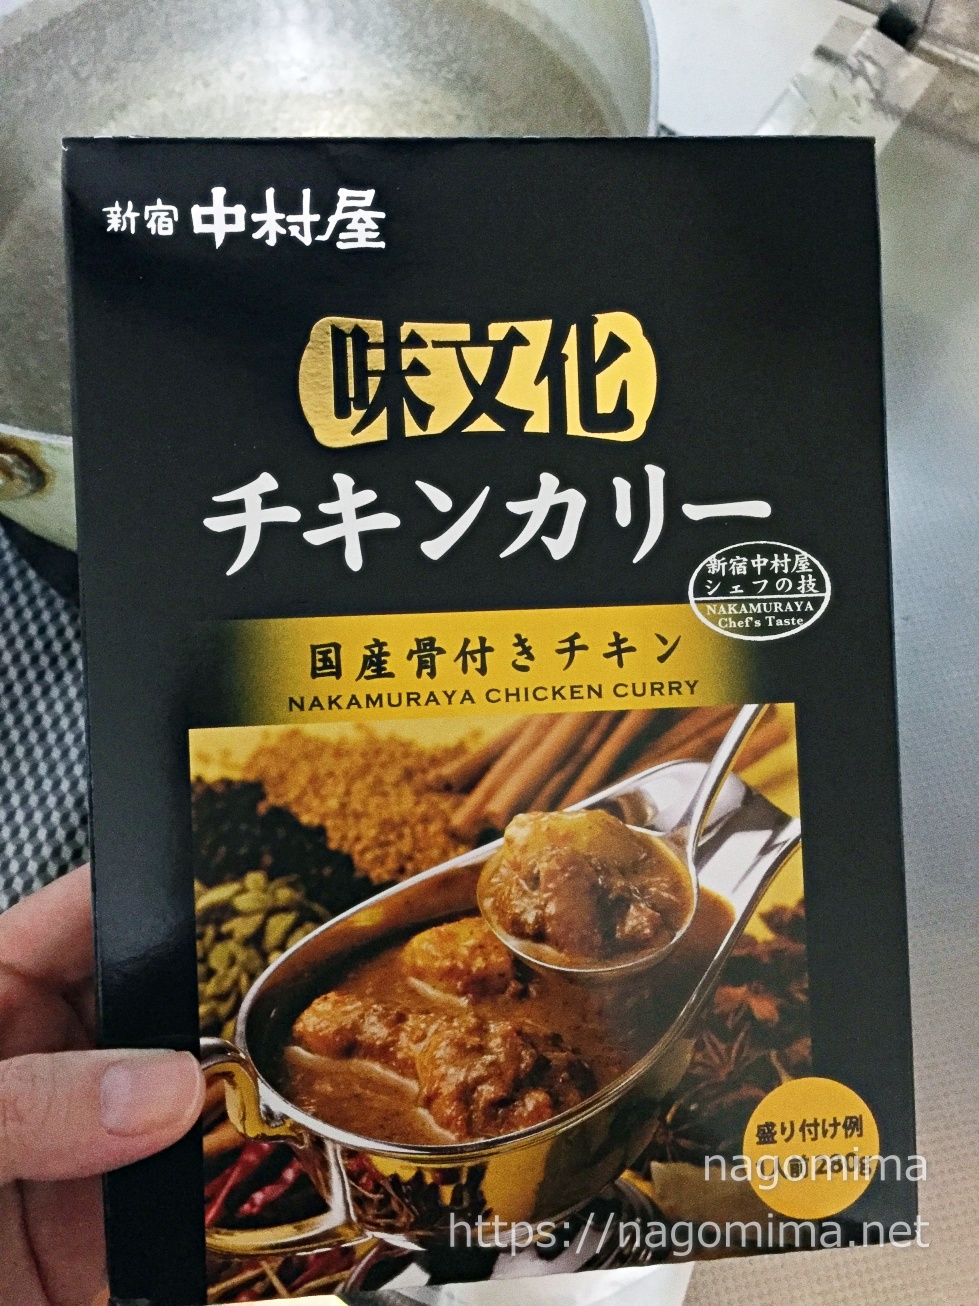 新宿中村屋の高級レトルトカレー「味文化チキンカリー」食べてみた